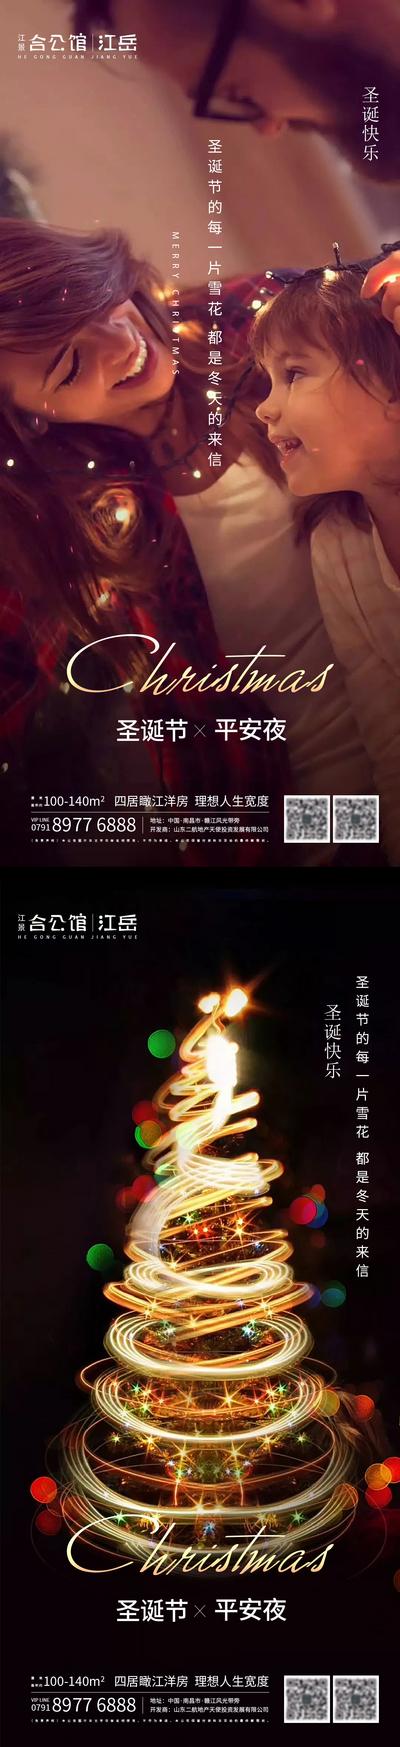 南门网 地产圣诞节系列海报